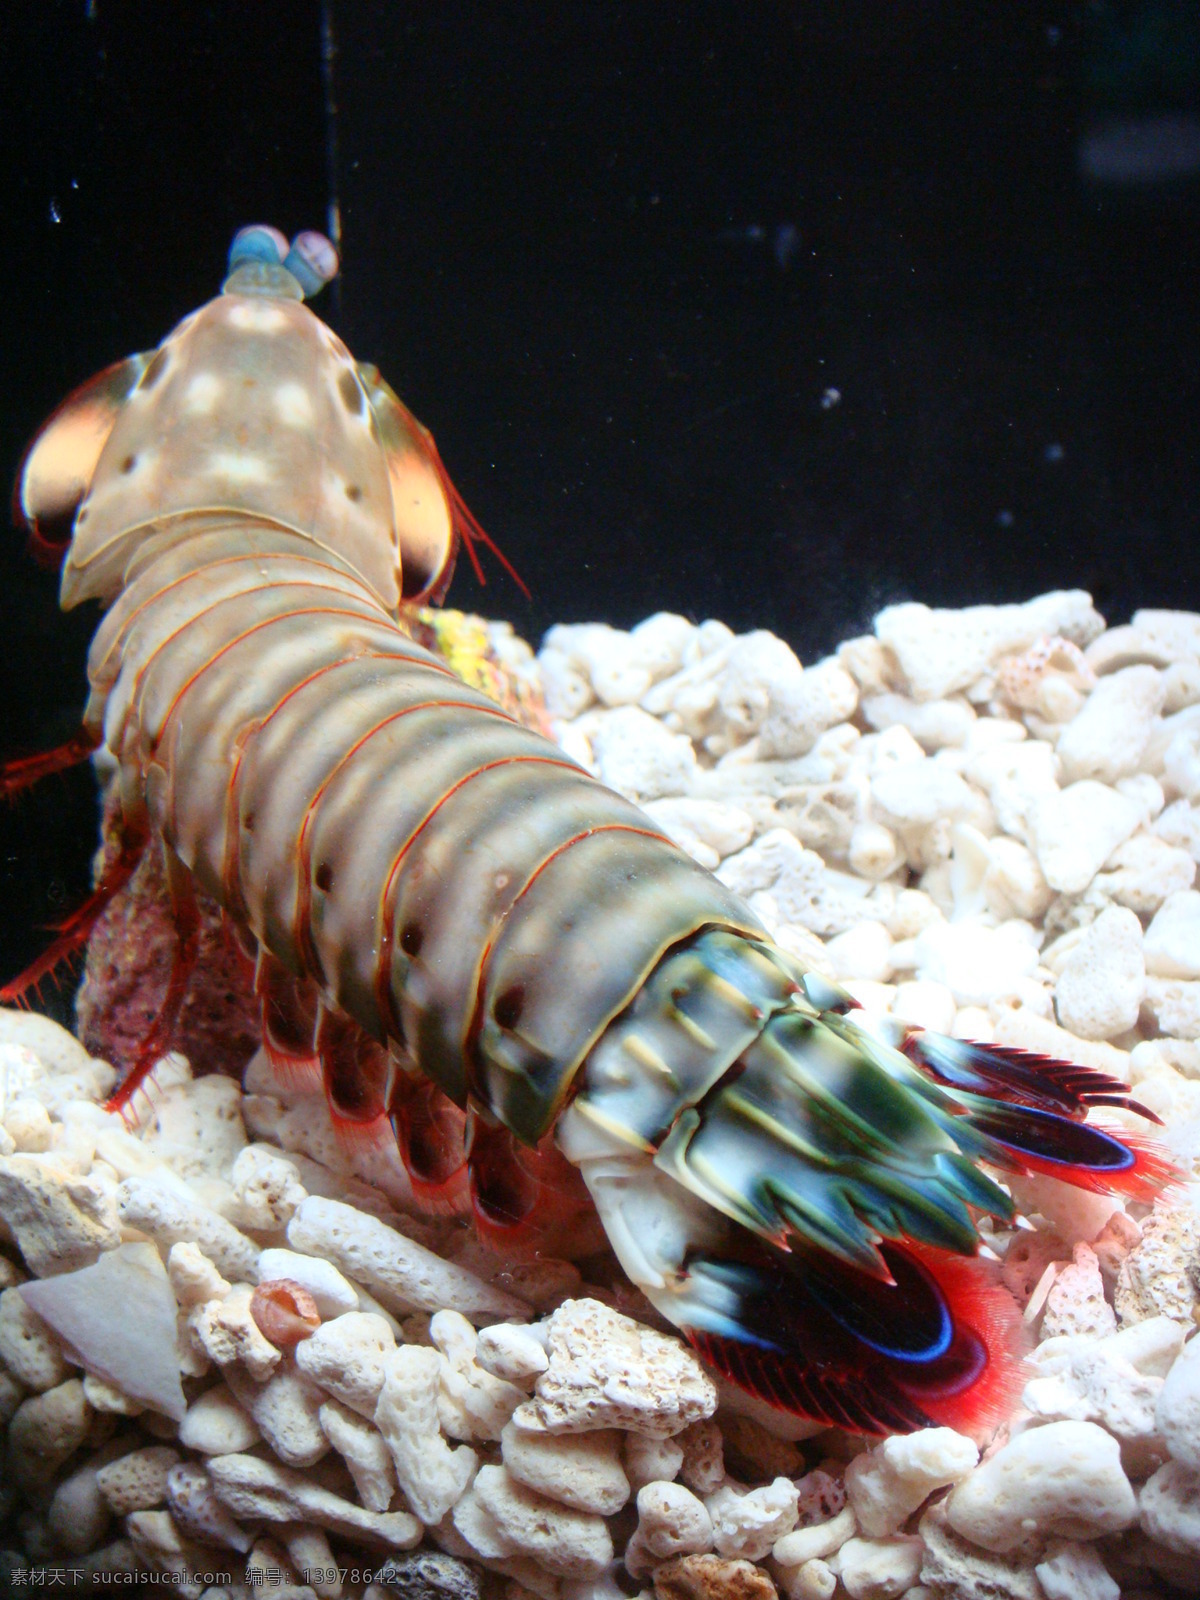 海洋 景观 海洋馆 海洋生物 龙虾 龙虾图片 海洋景观 海洋公园 上海海底世界